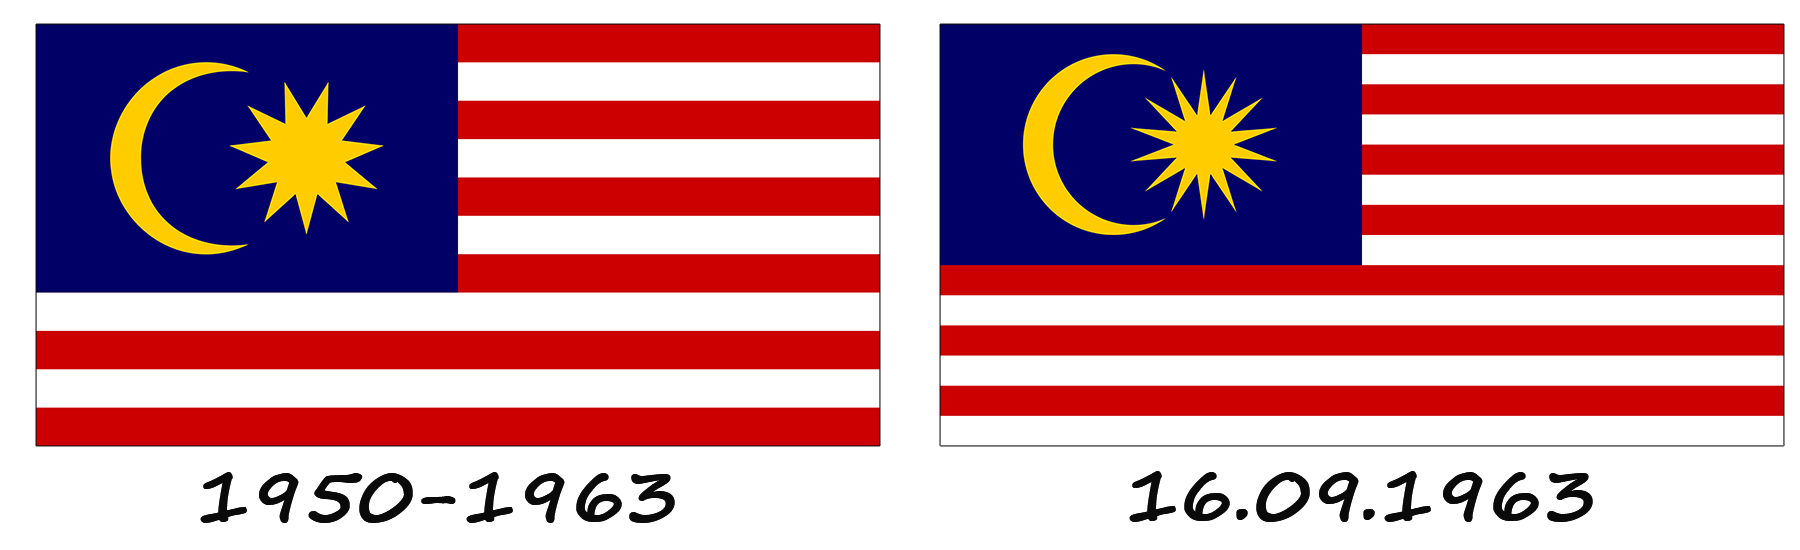 Histoire du drapeau de la Malaisie